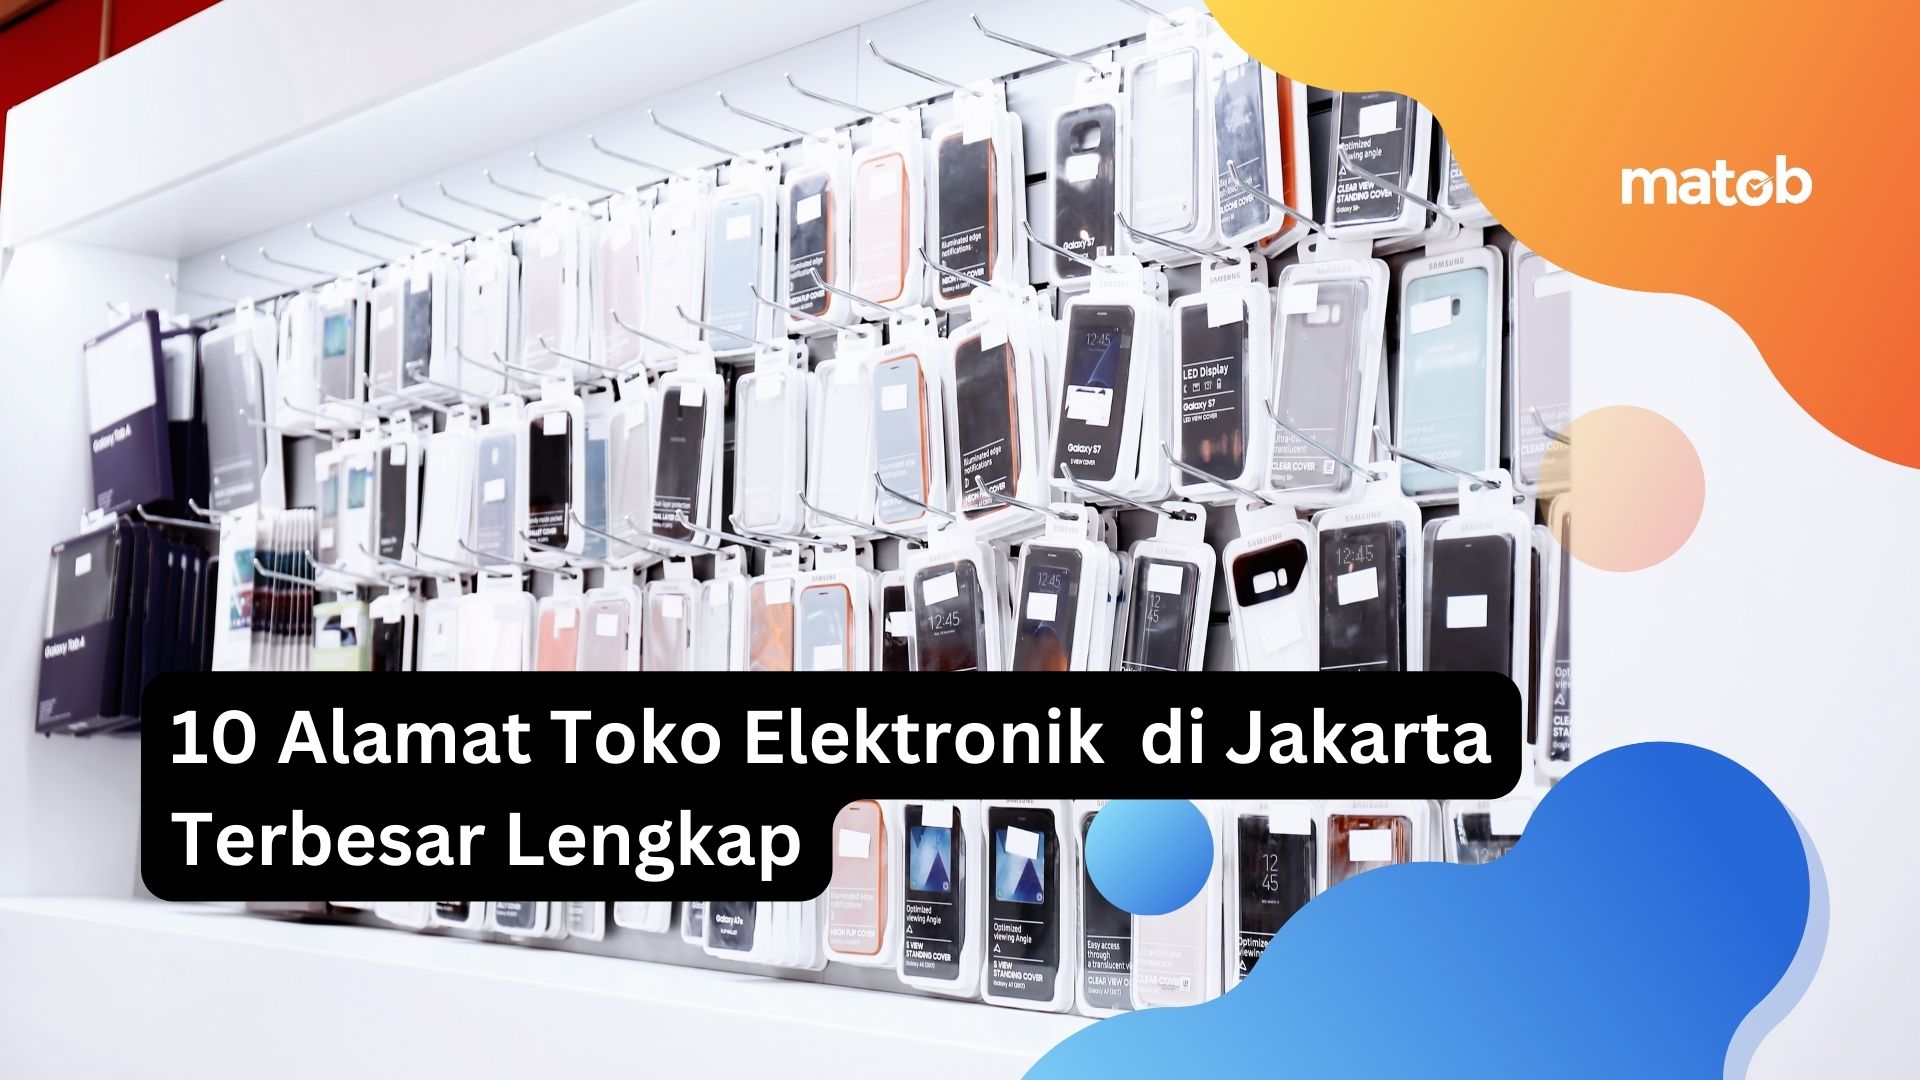 10 Alamat Toko Elektronik di Jakarta Terbesar Lengkap